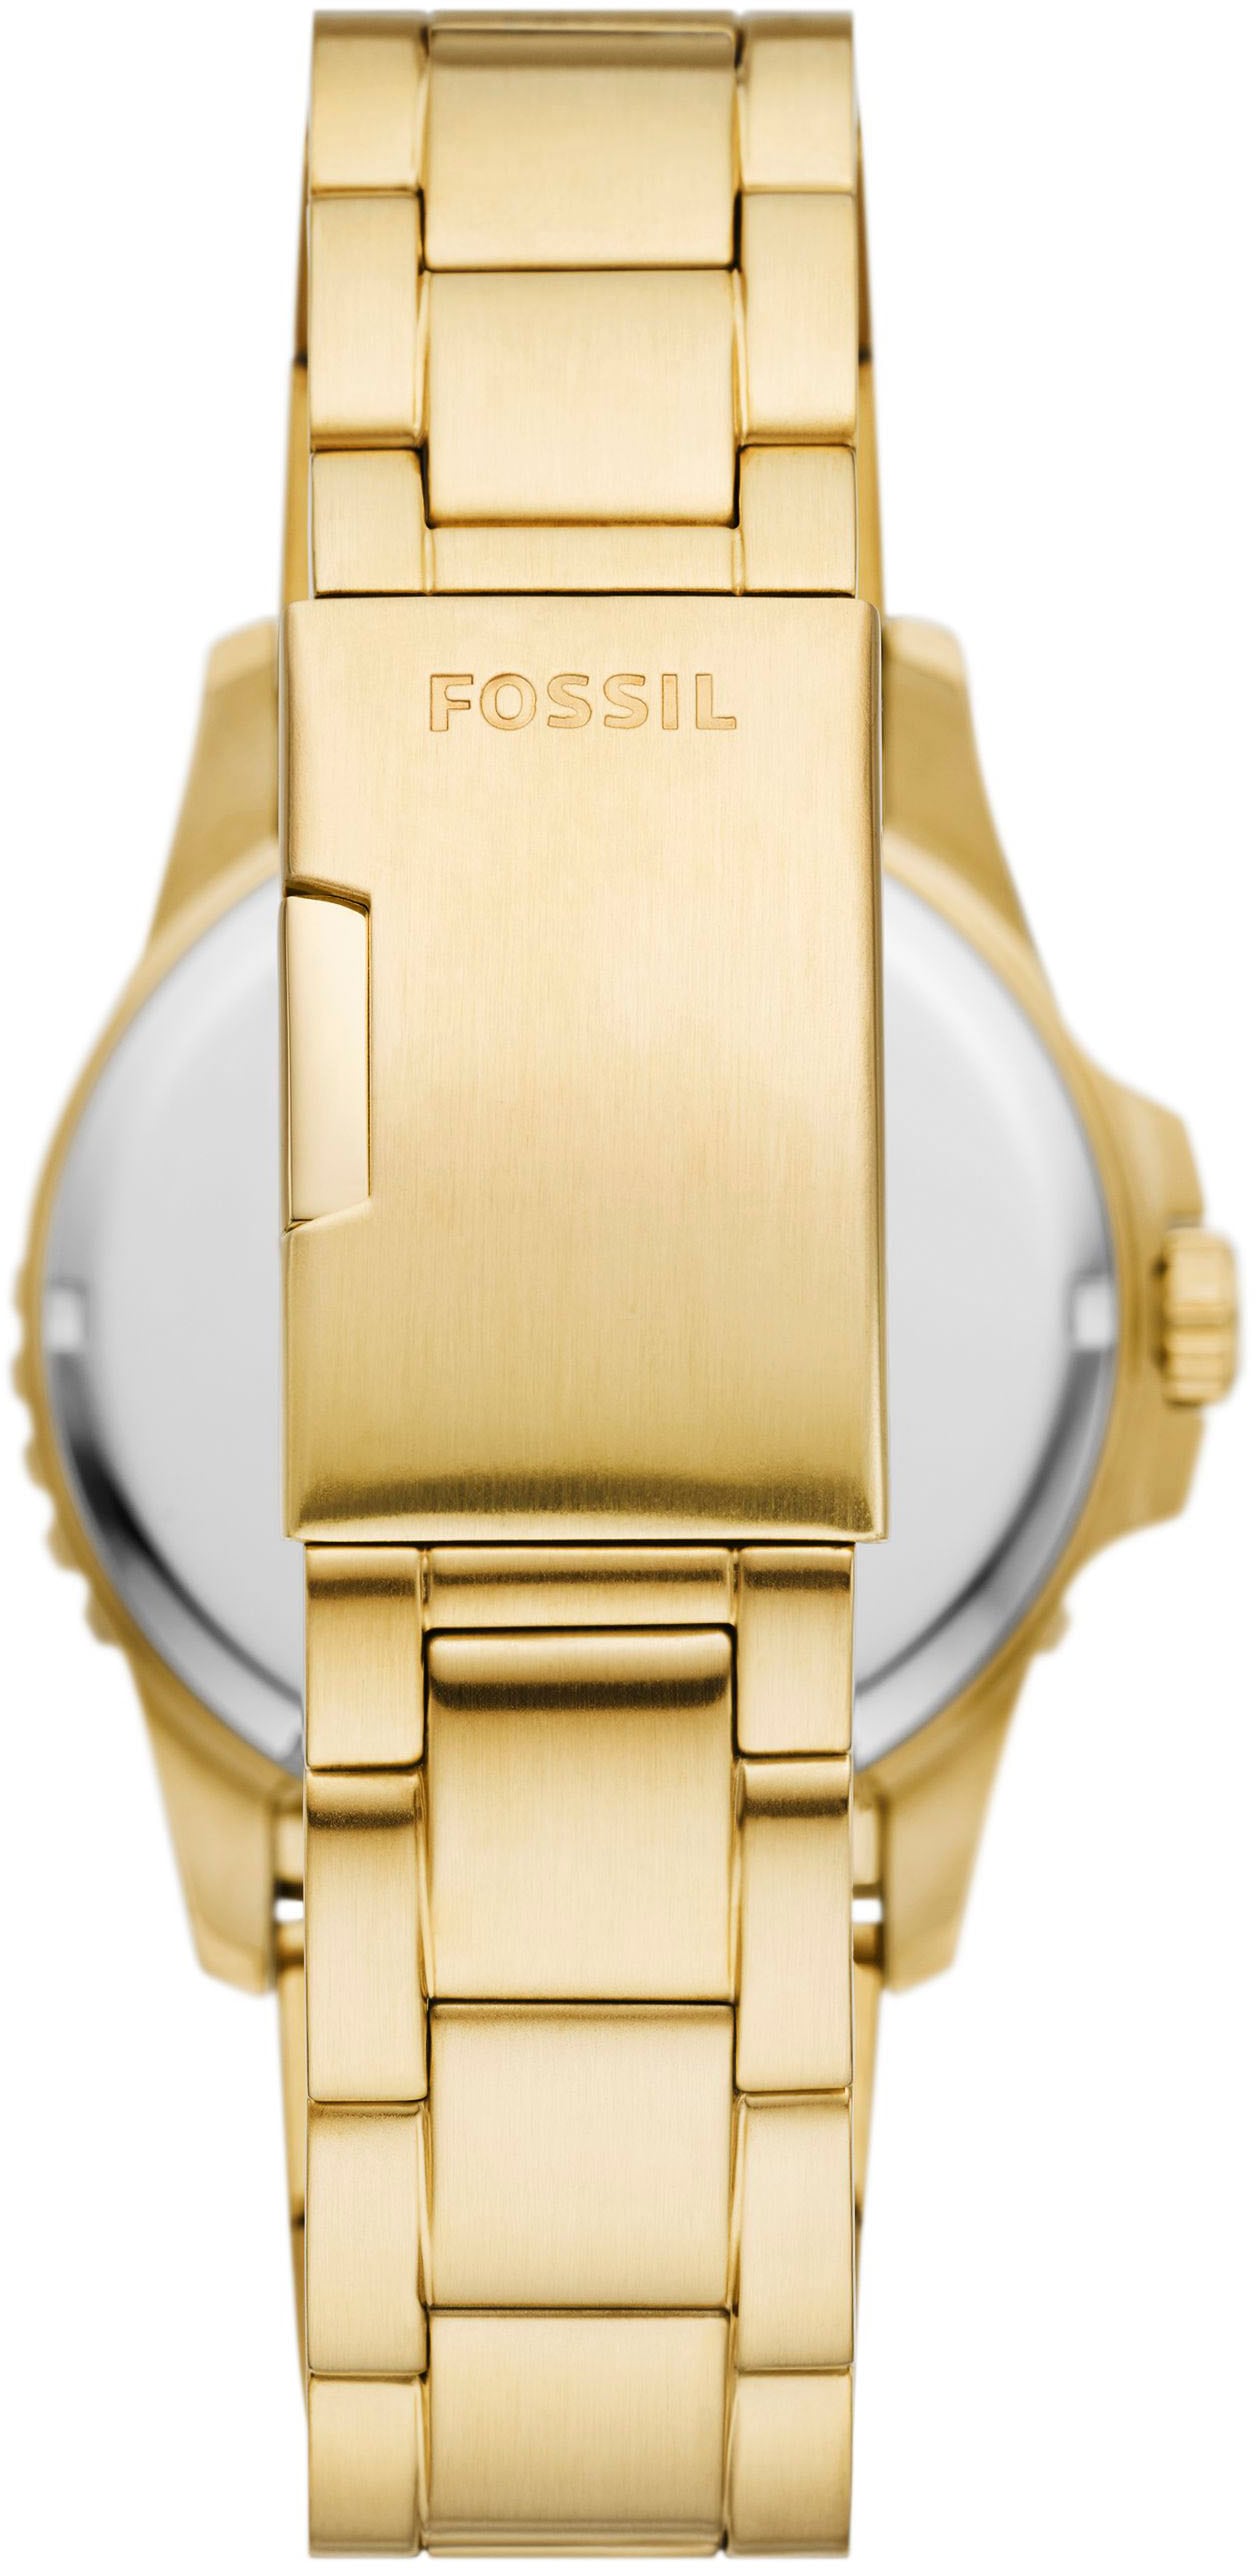 Fossil Quarzuhr »FOSSIL BLUE DIVE, FS6035«, Armbanduhr, Herrenuhr, Datum, analog